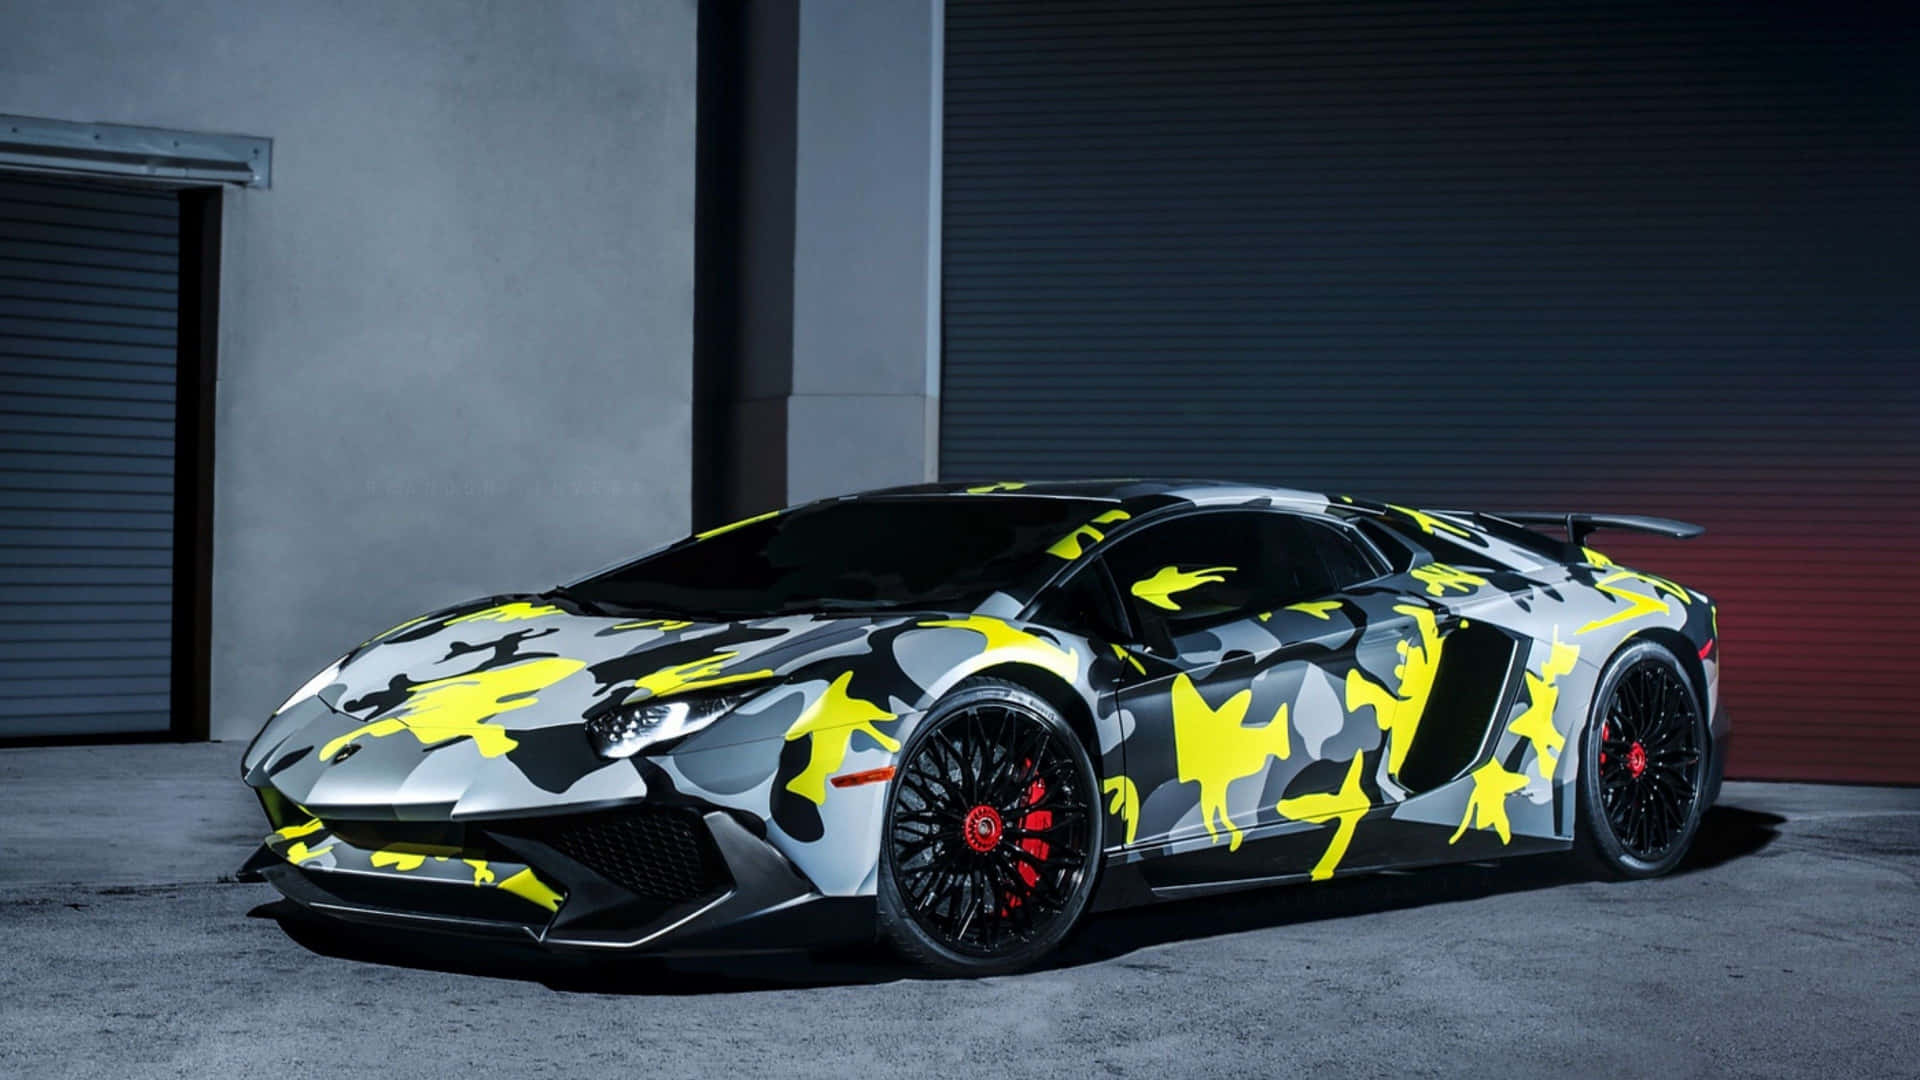 Enkamouflerad Lamborghini Sportbil Är Parkerad Framför Ett Garage.